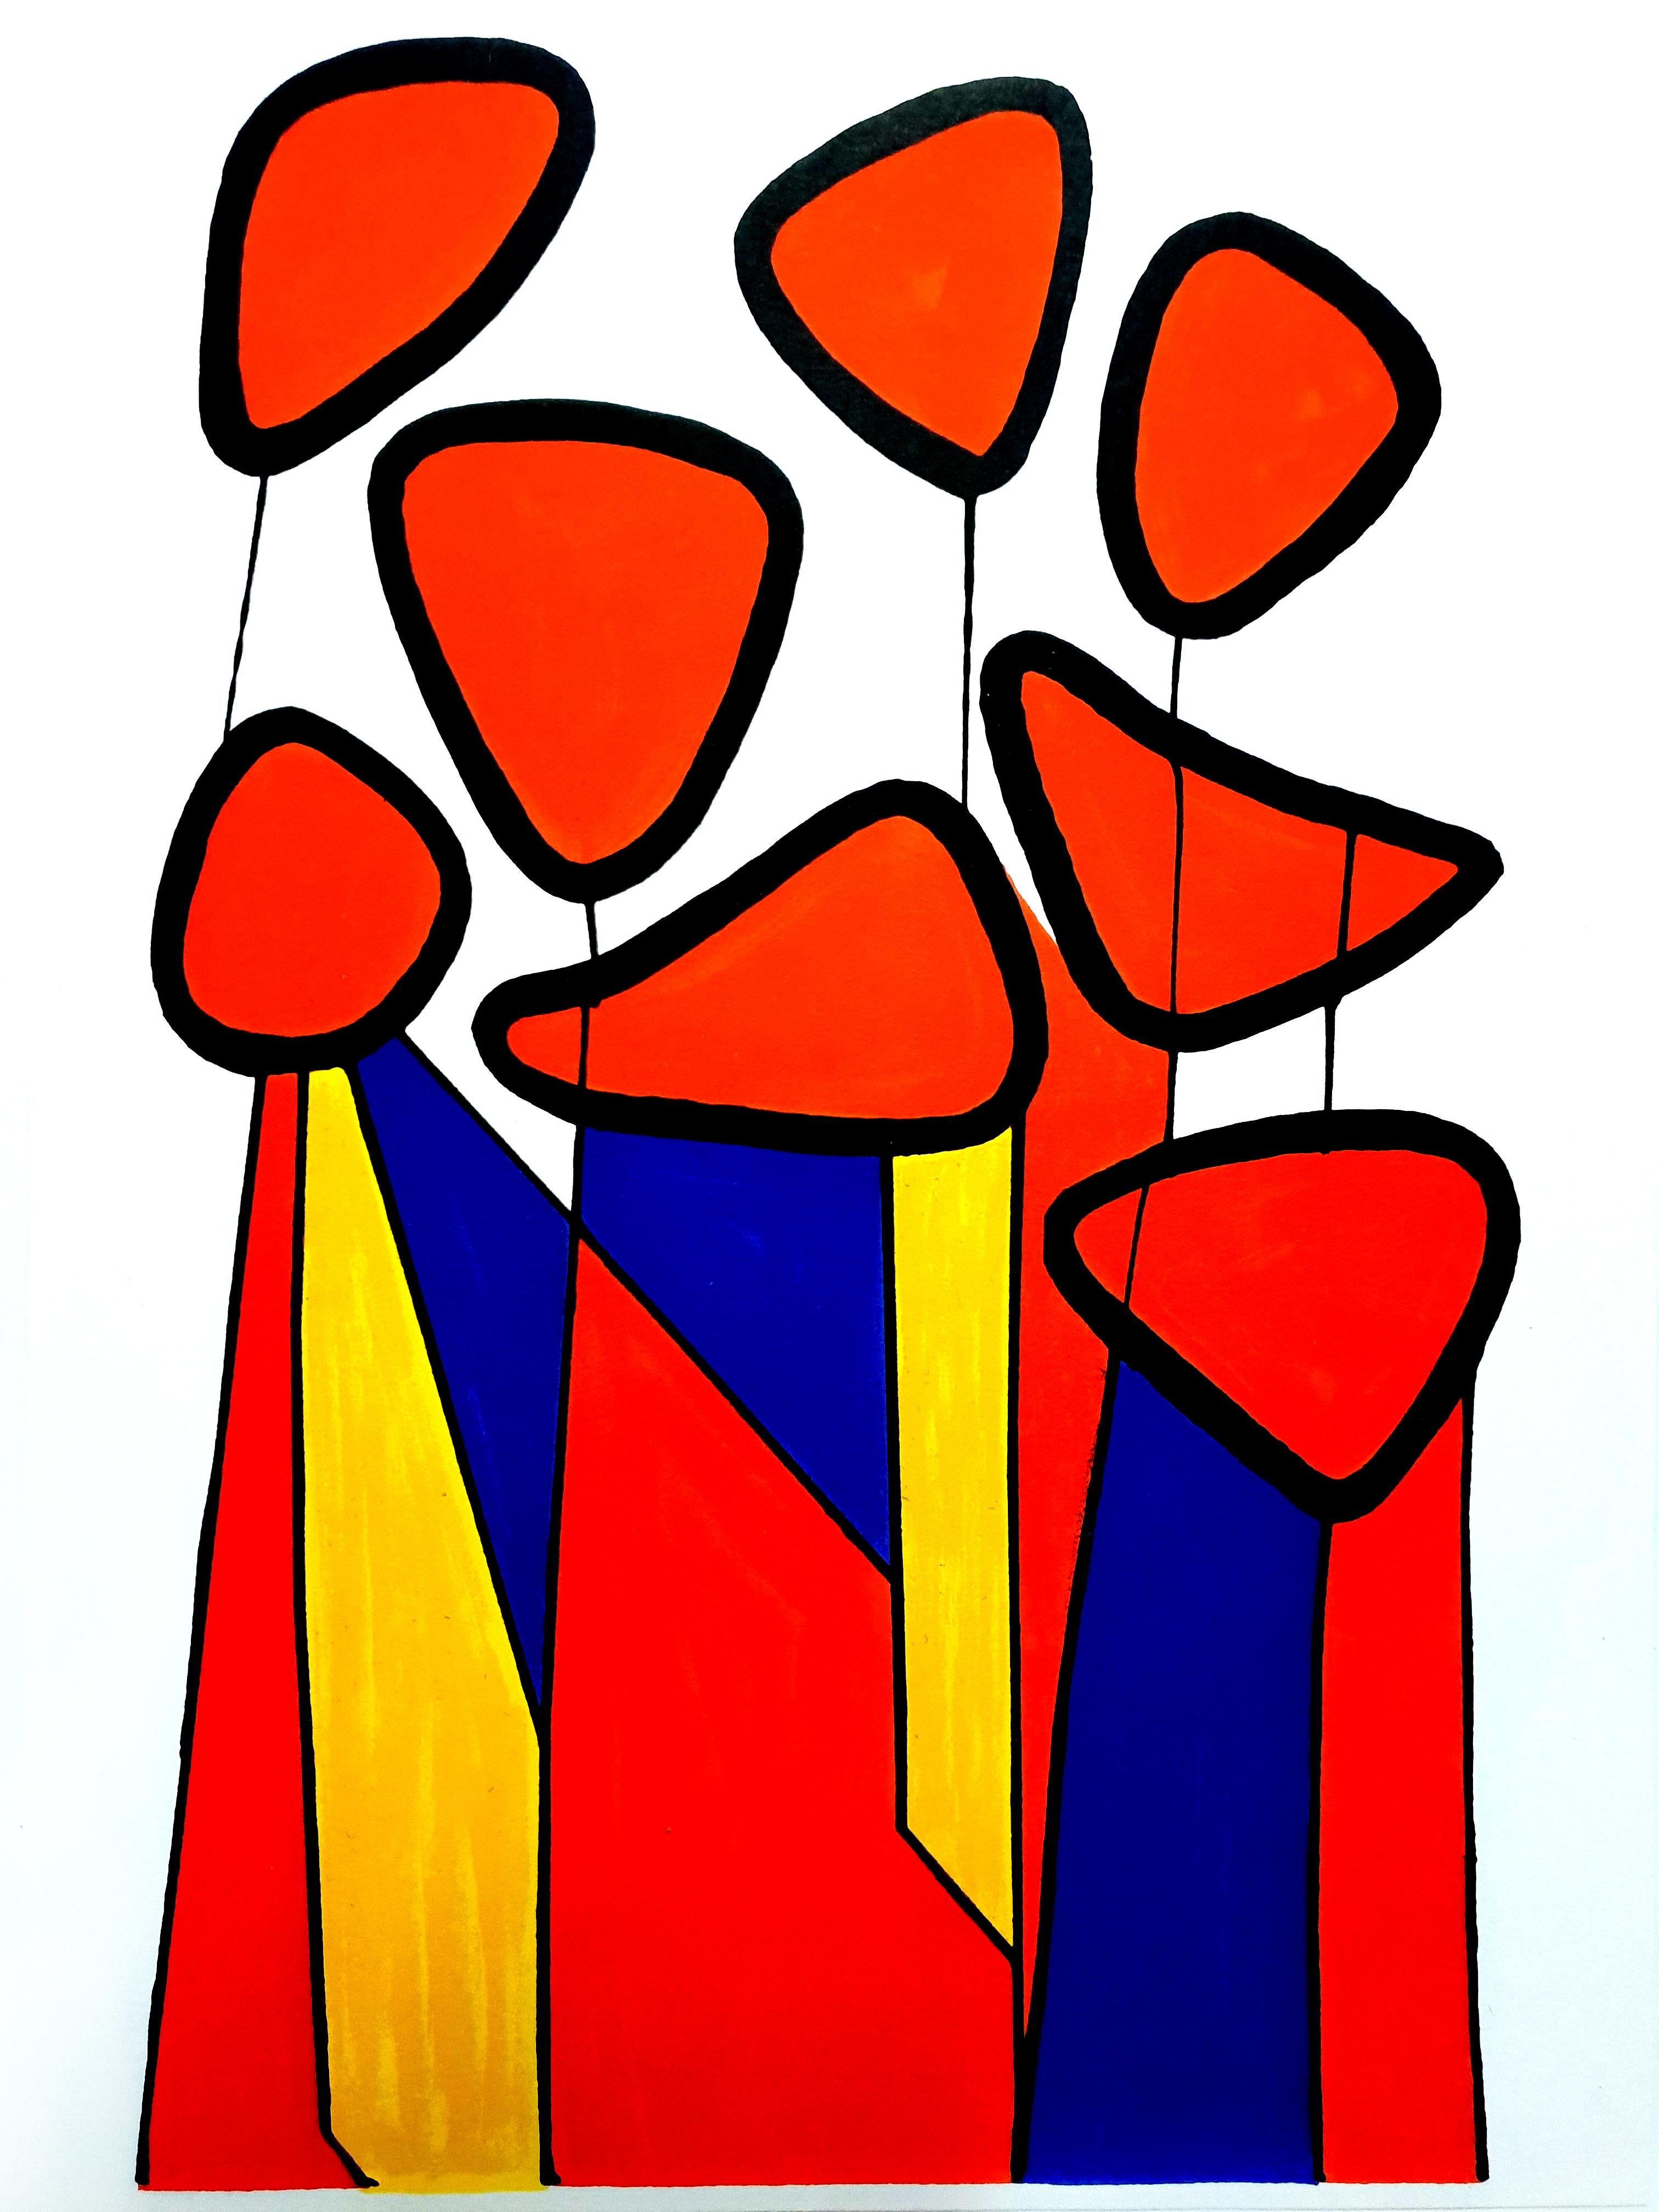 Alexander Calder - Lithographie originale - Composition
1972
Extrait de la revue d'art XXe Siecle
Dimensions : 32 x 24
Edition : G. di San Lazzaro.
Non signé et non numéroté tel que publié